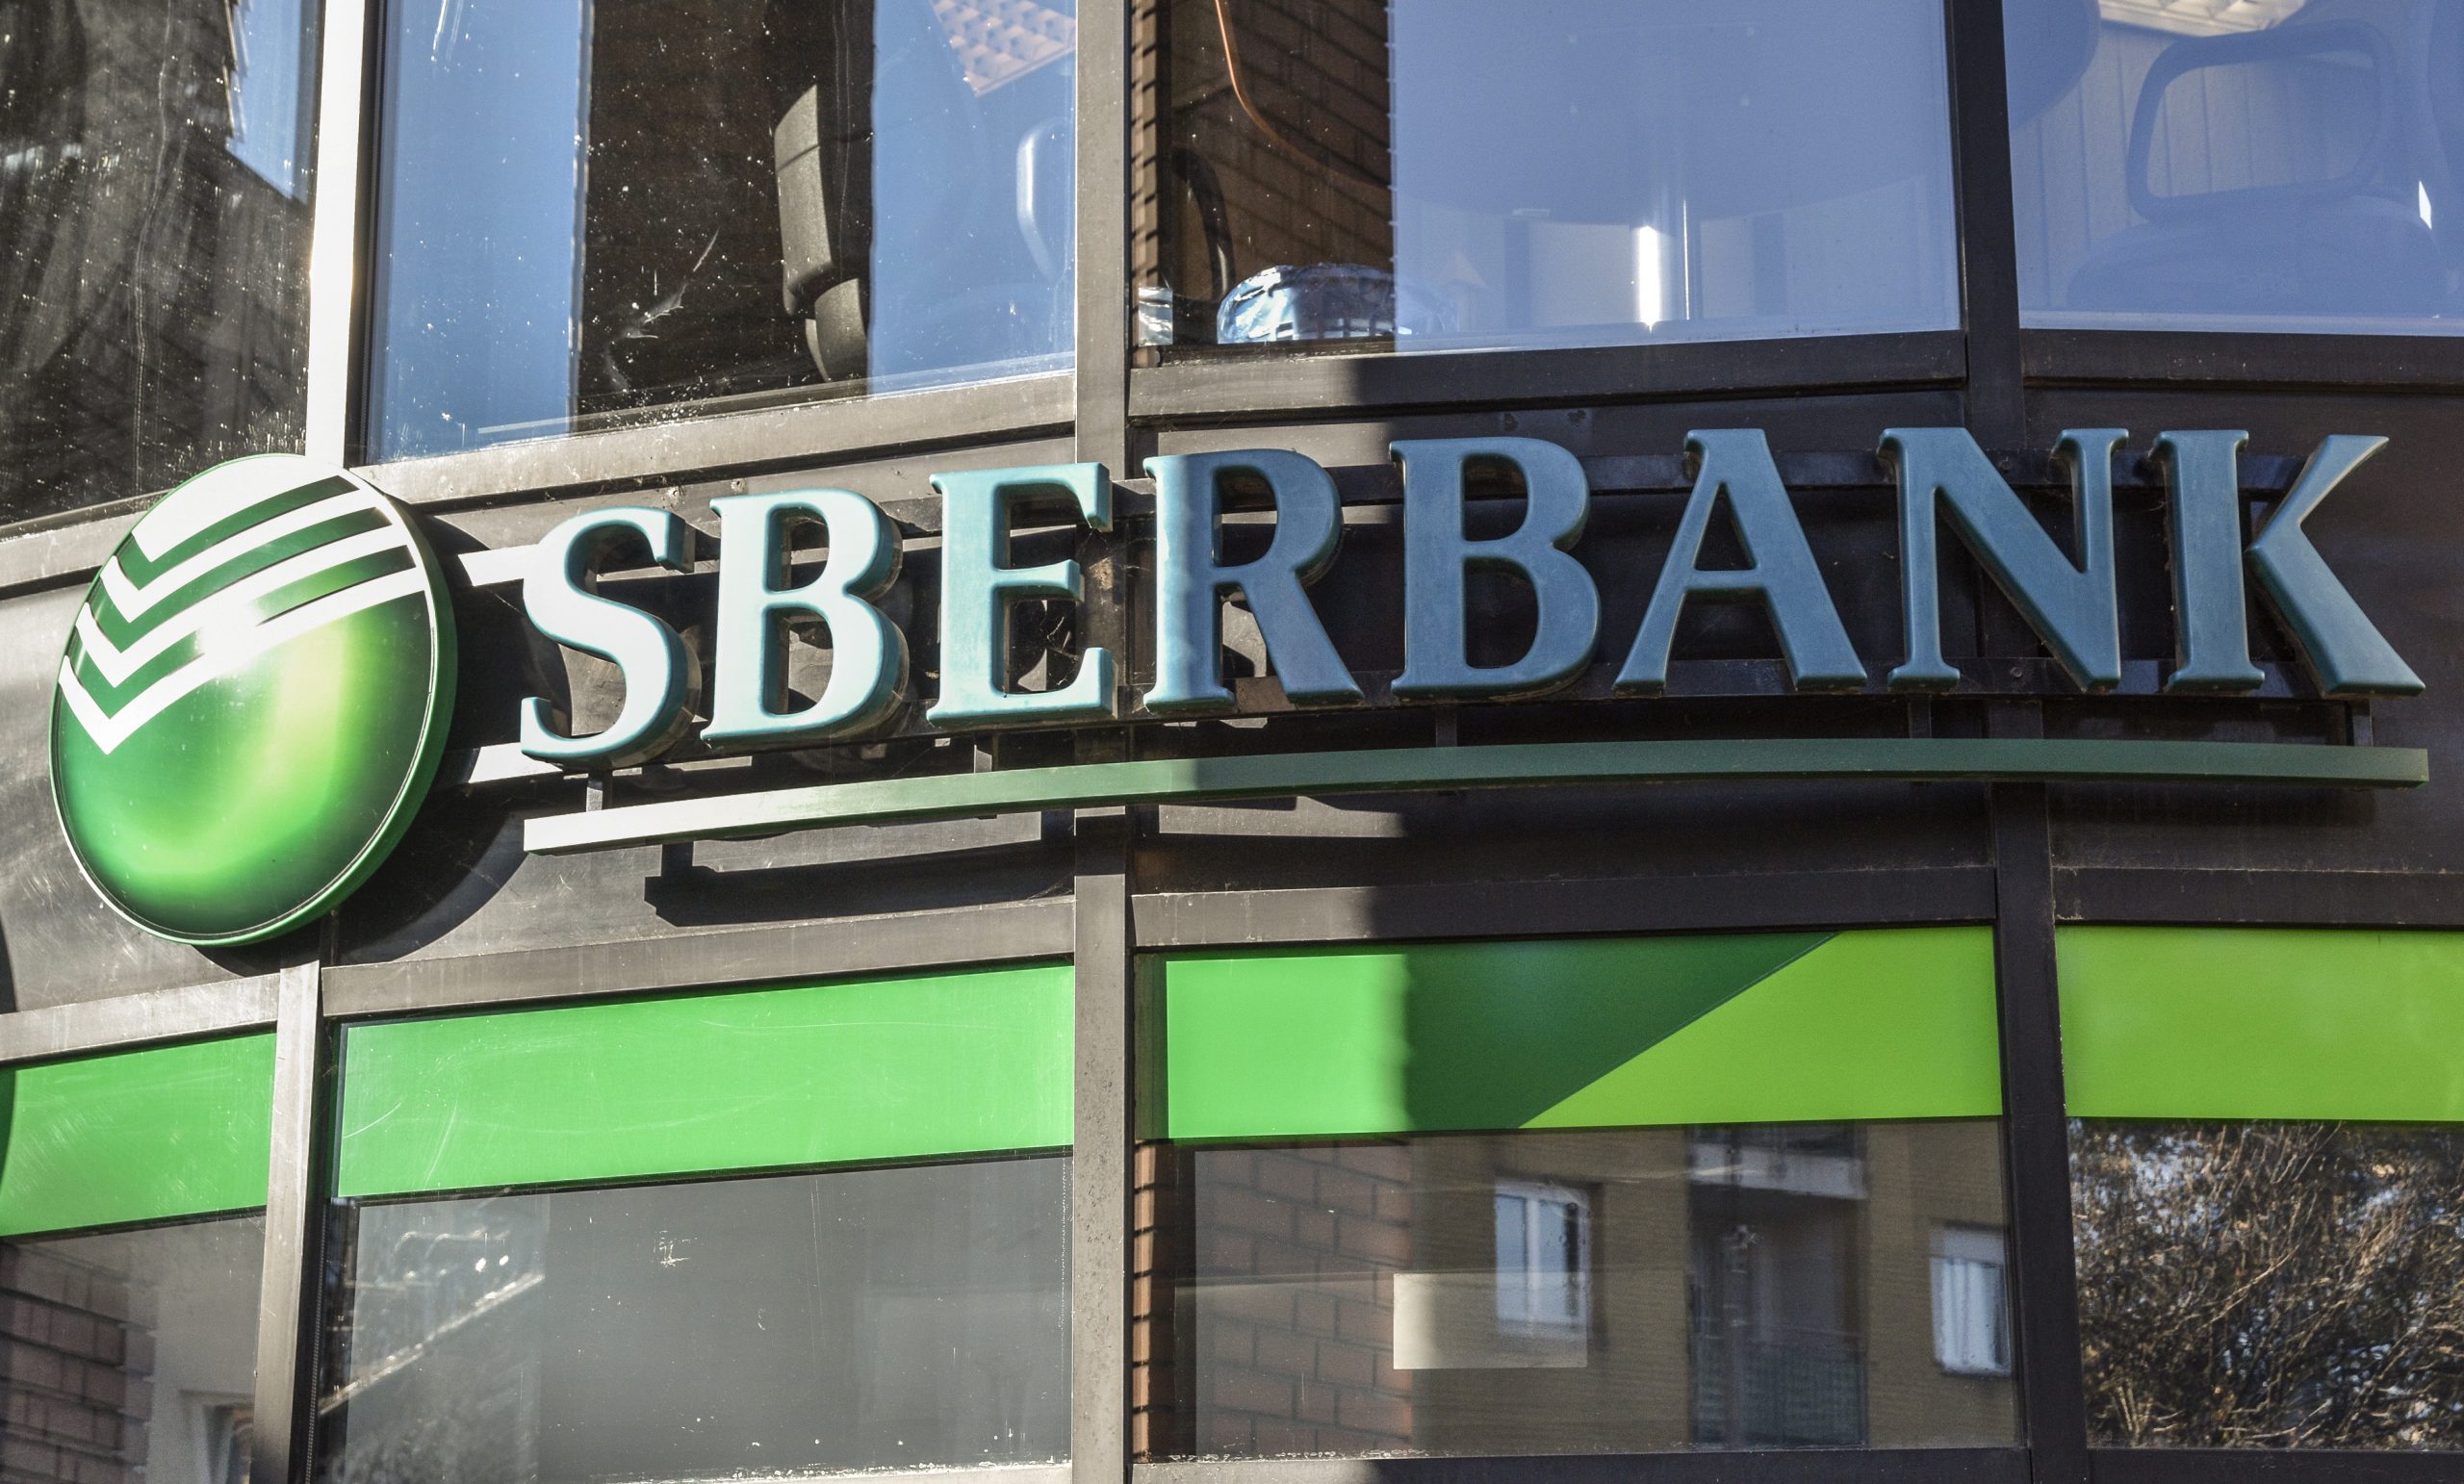 Lizenz von Sberbank entzogen, Kunden sollen entschädigt werden